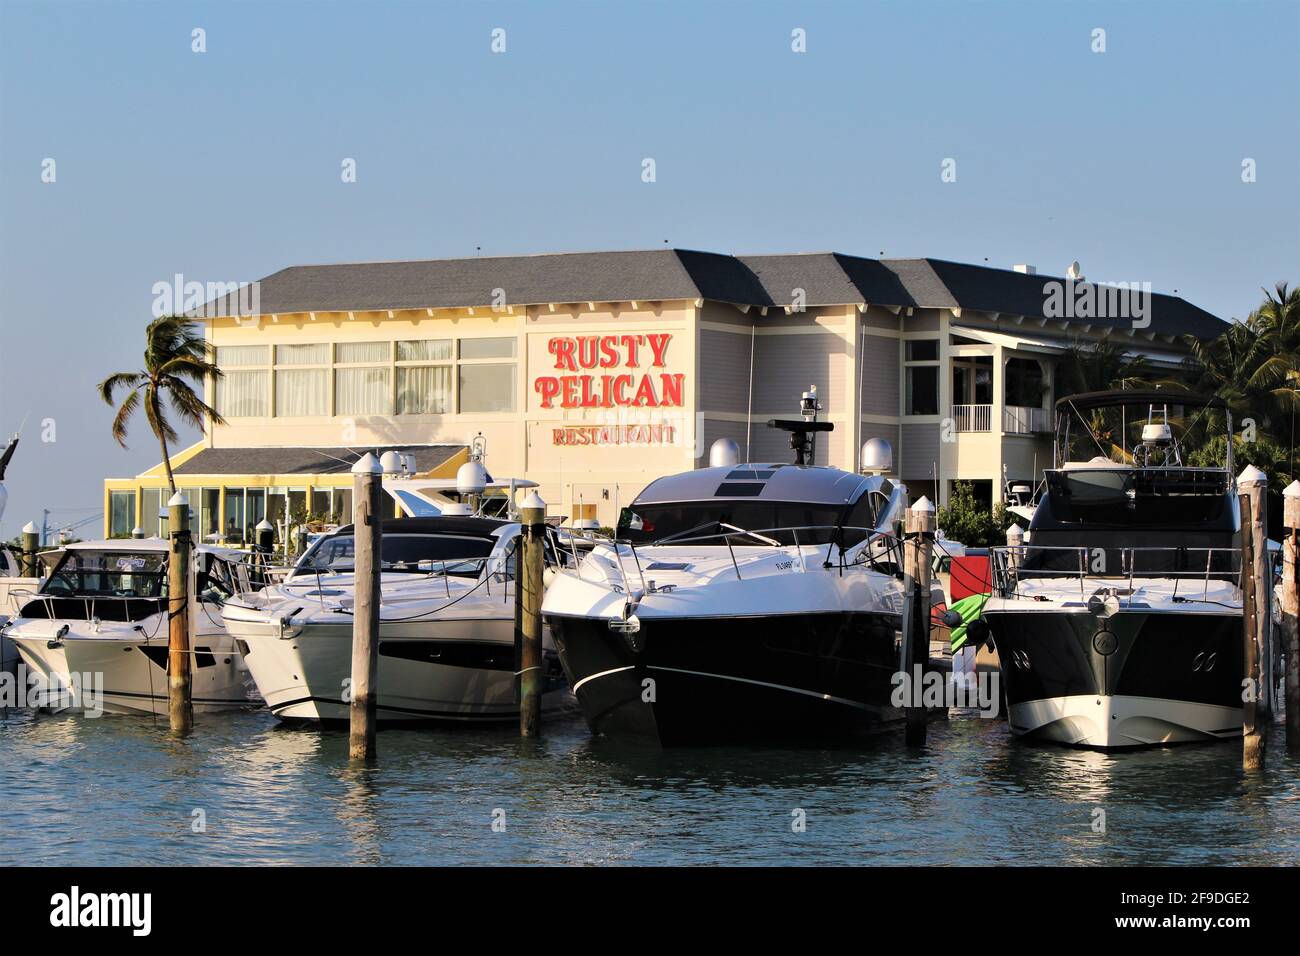 Cartello per il ristorante Rusty Pelican. Situato direttamente sulla Rickenbacker Marina, offre cene all'aperto con vista sul lungomare di Miami. Foto Stock